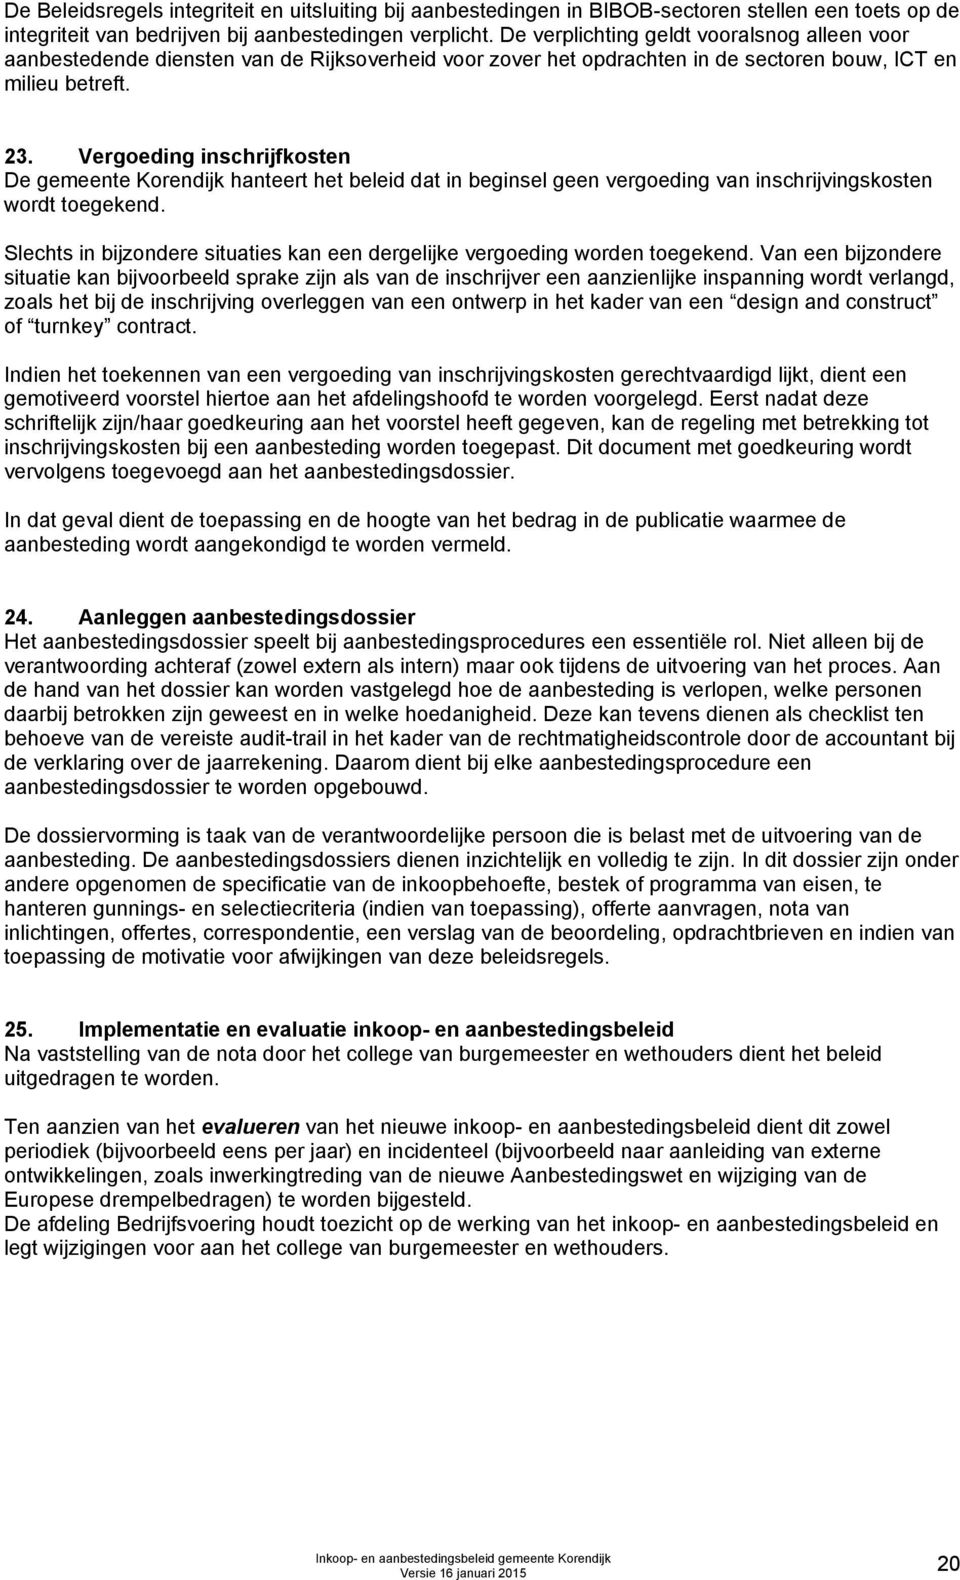 Vergoeding inschrijfkosten De gemeente Korendijk hanteert het beleid dat in beginsel geen vergoeding van inschrijvingskosten wordt toegekend.